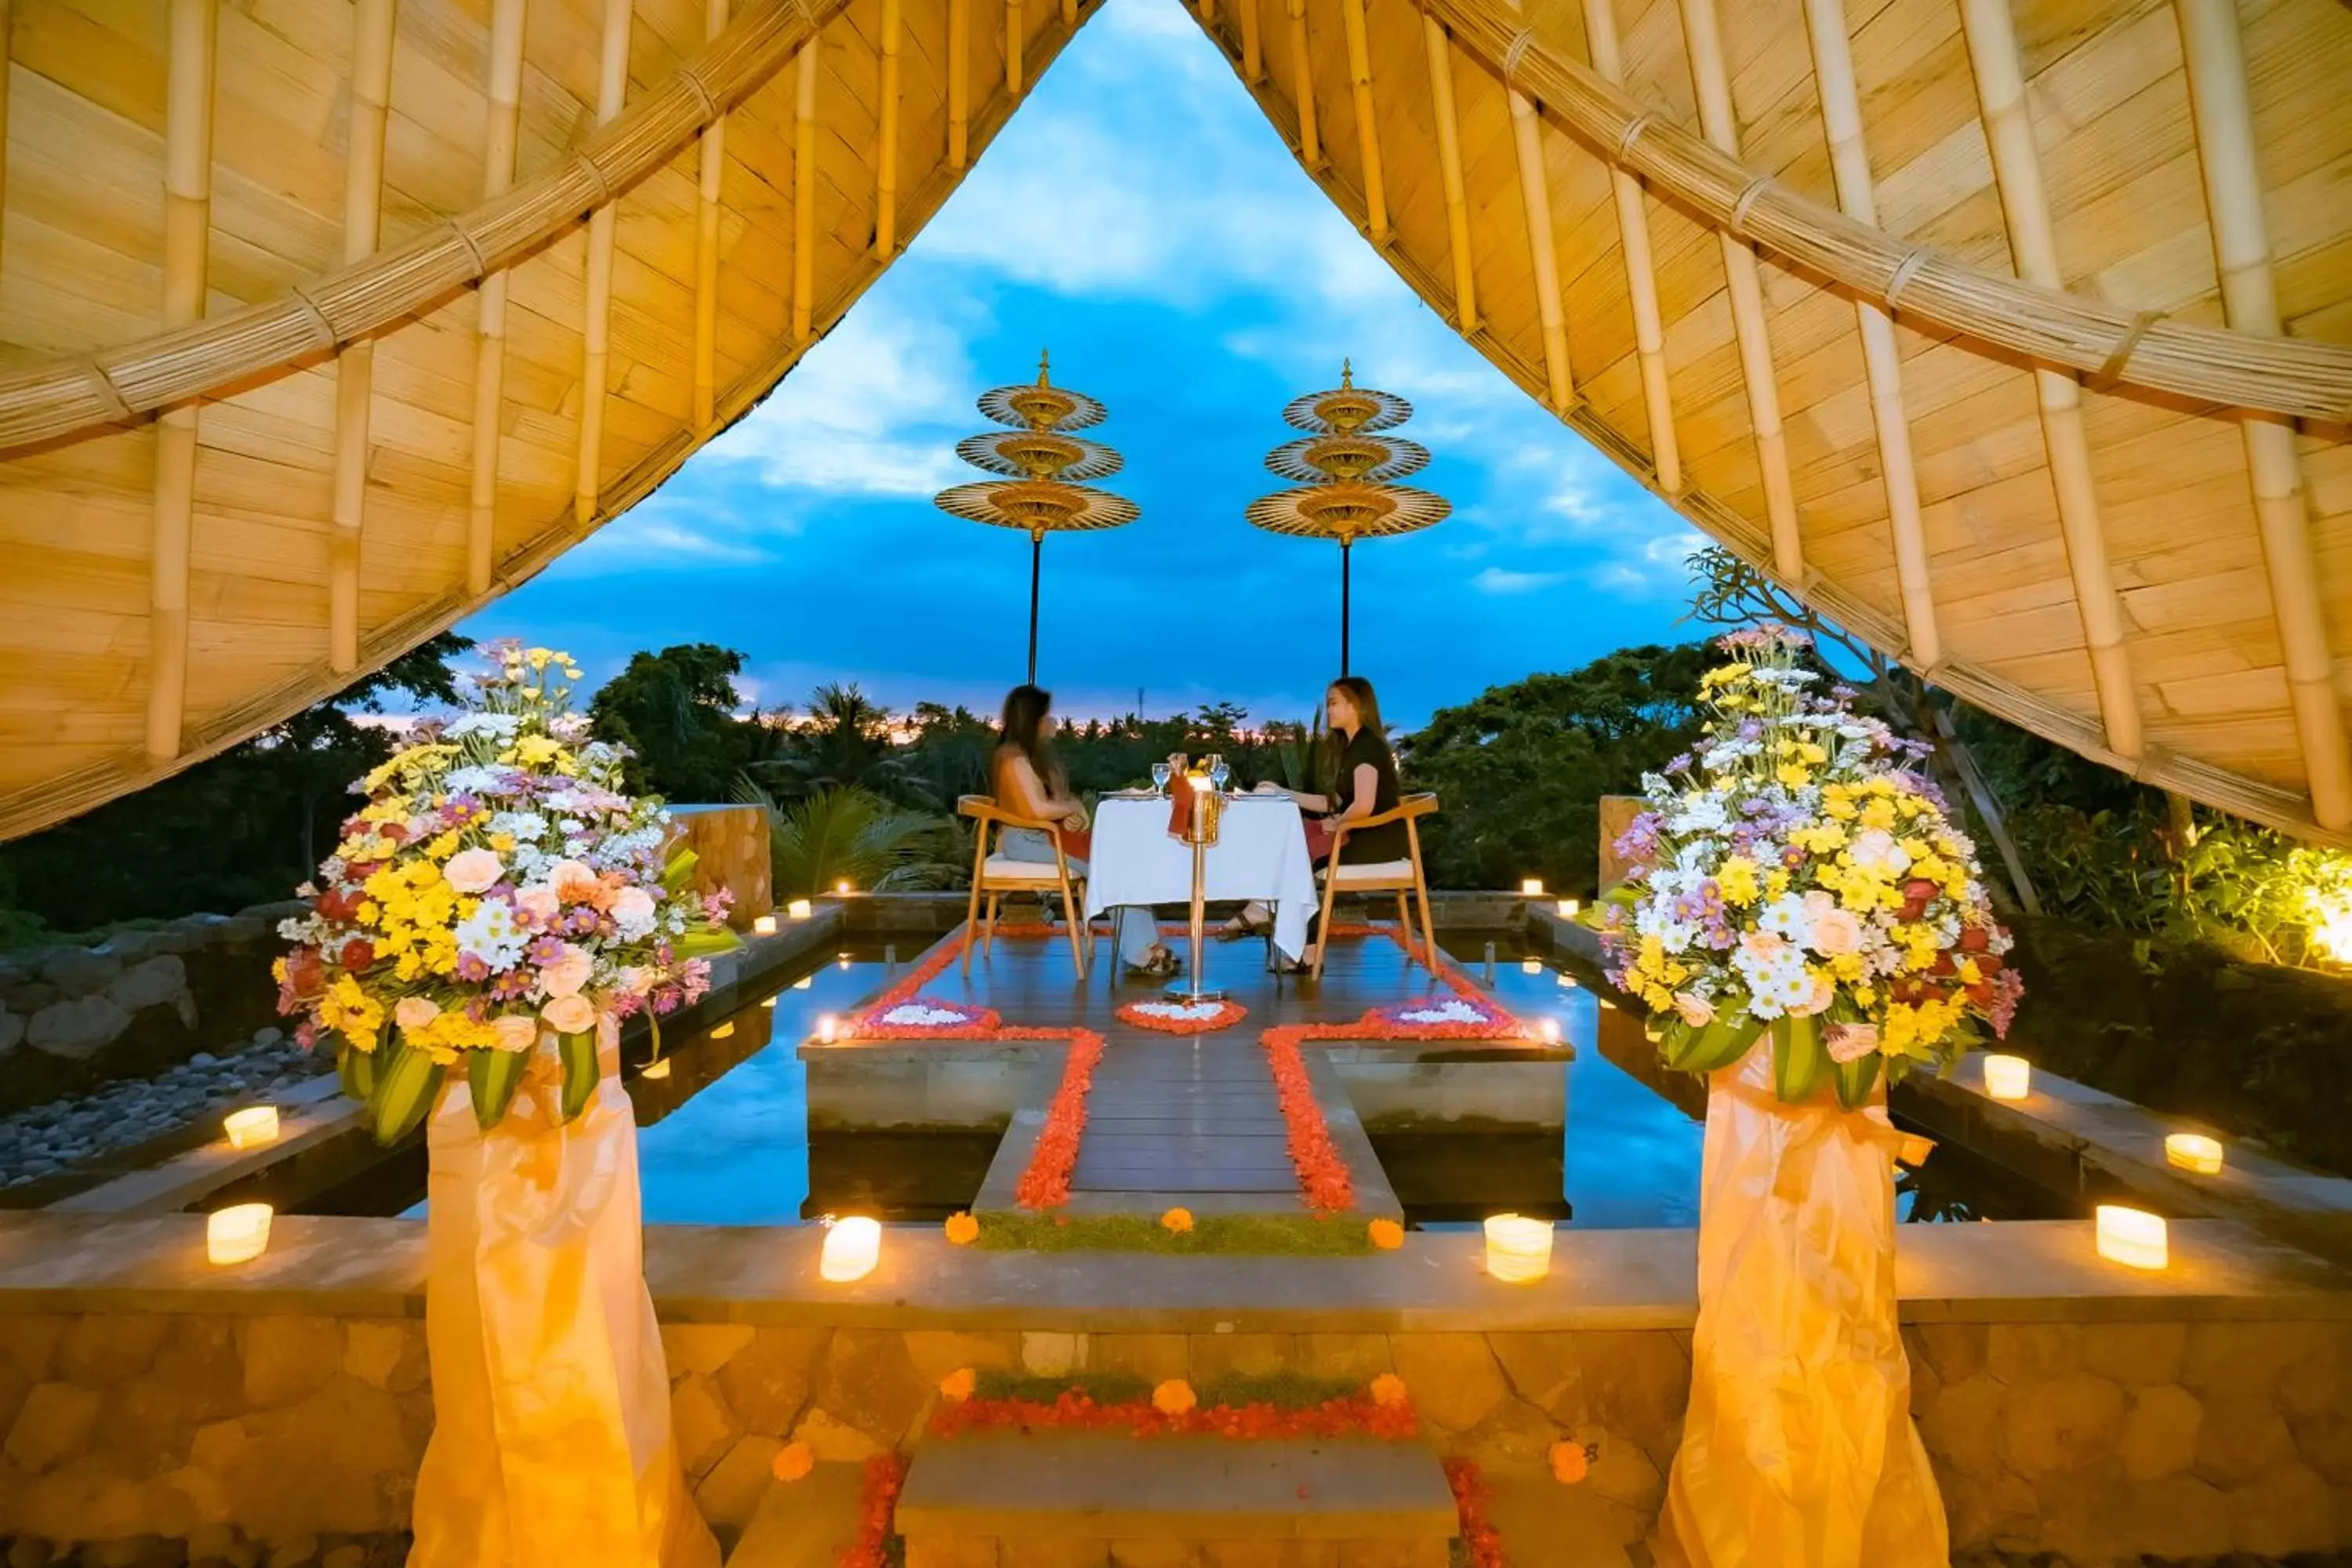 Banquet/Function facilities, Banquet Facilities in Weda Cita Resort and Spa by Mahaputra